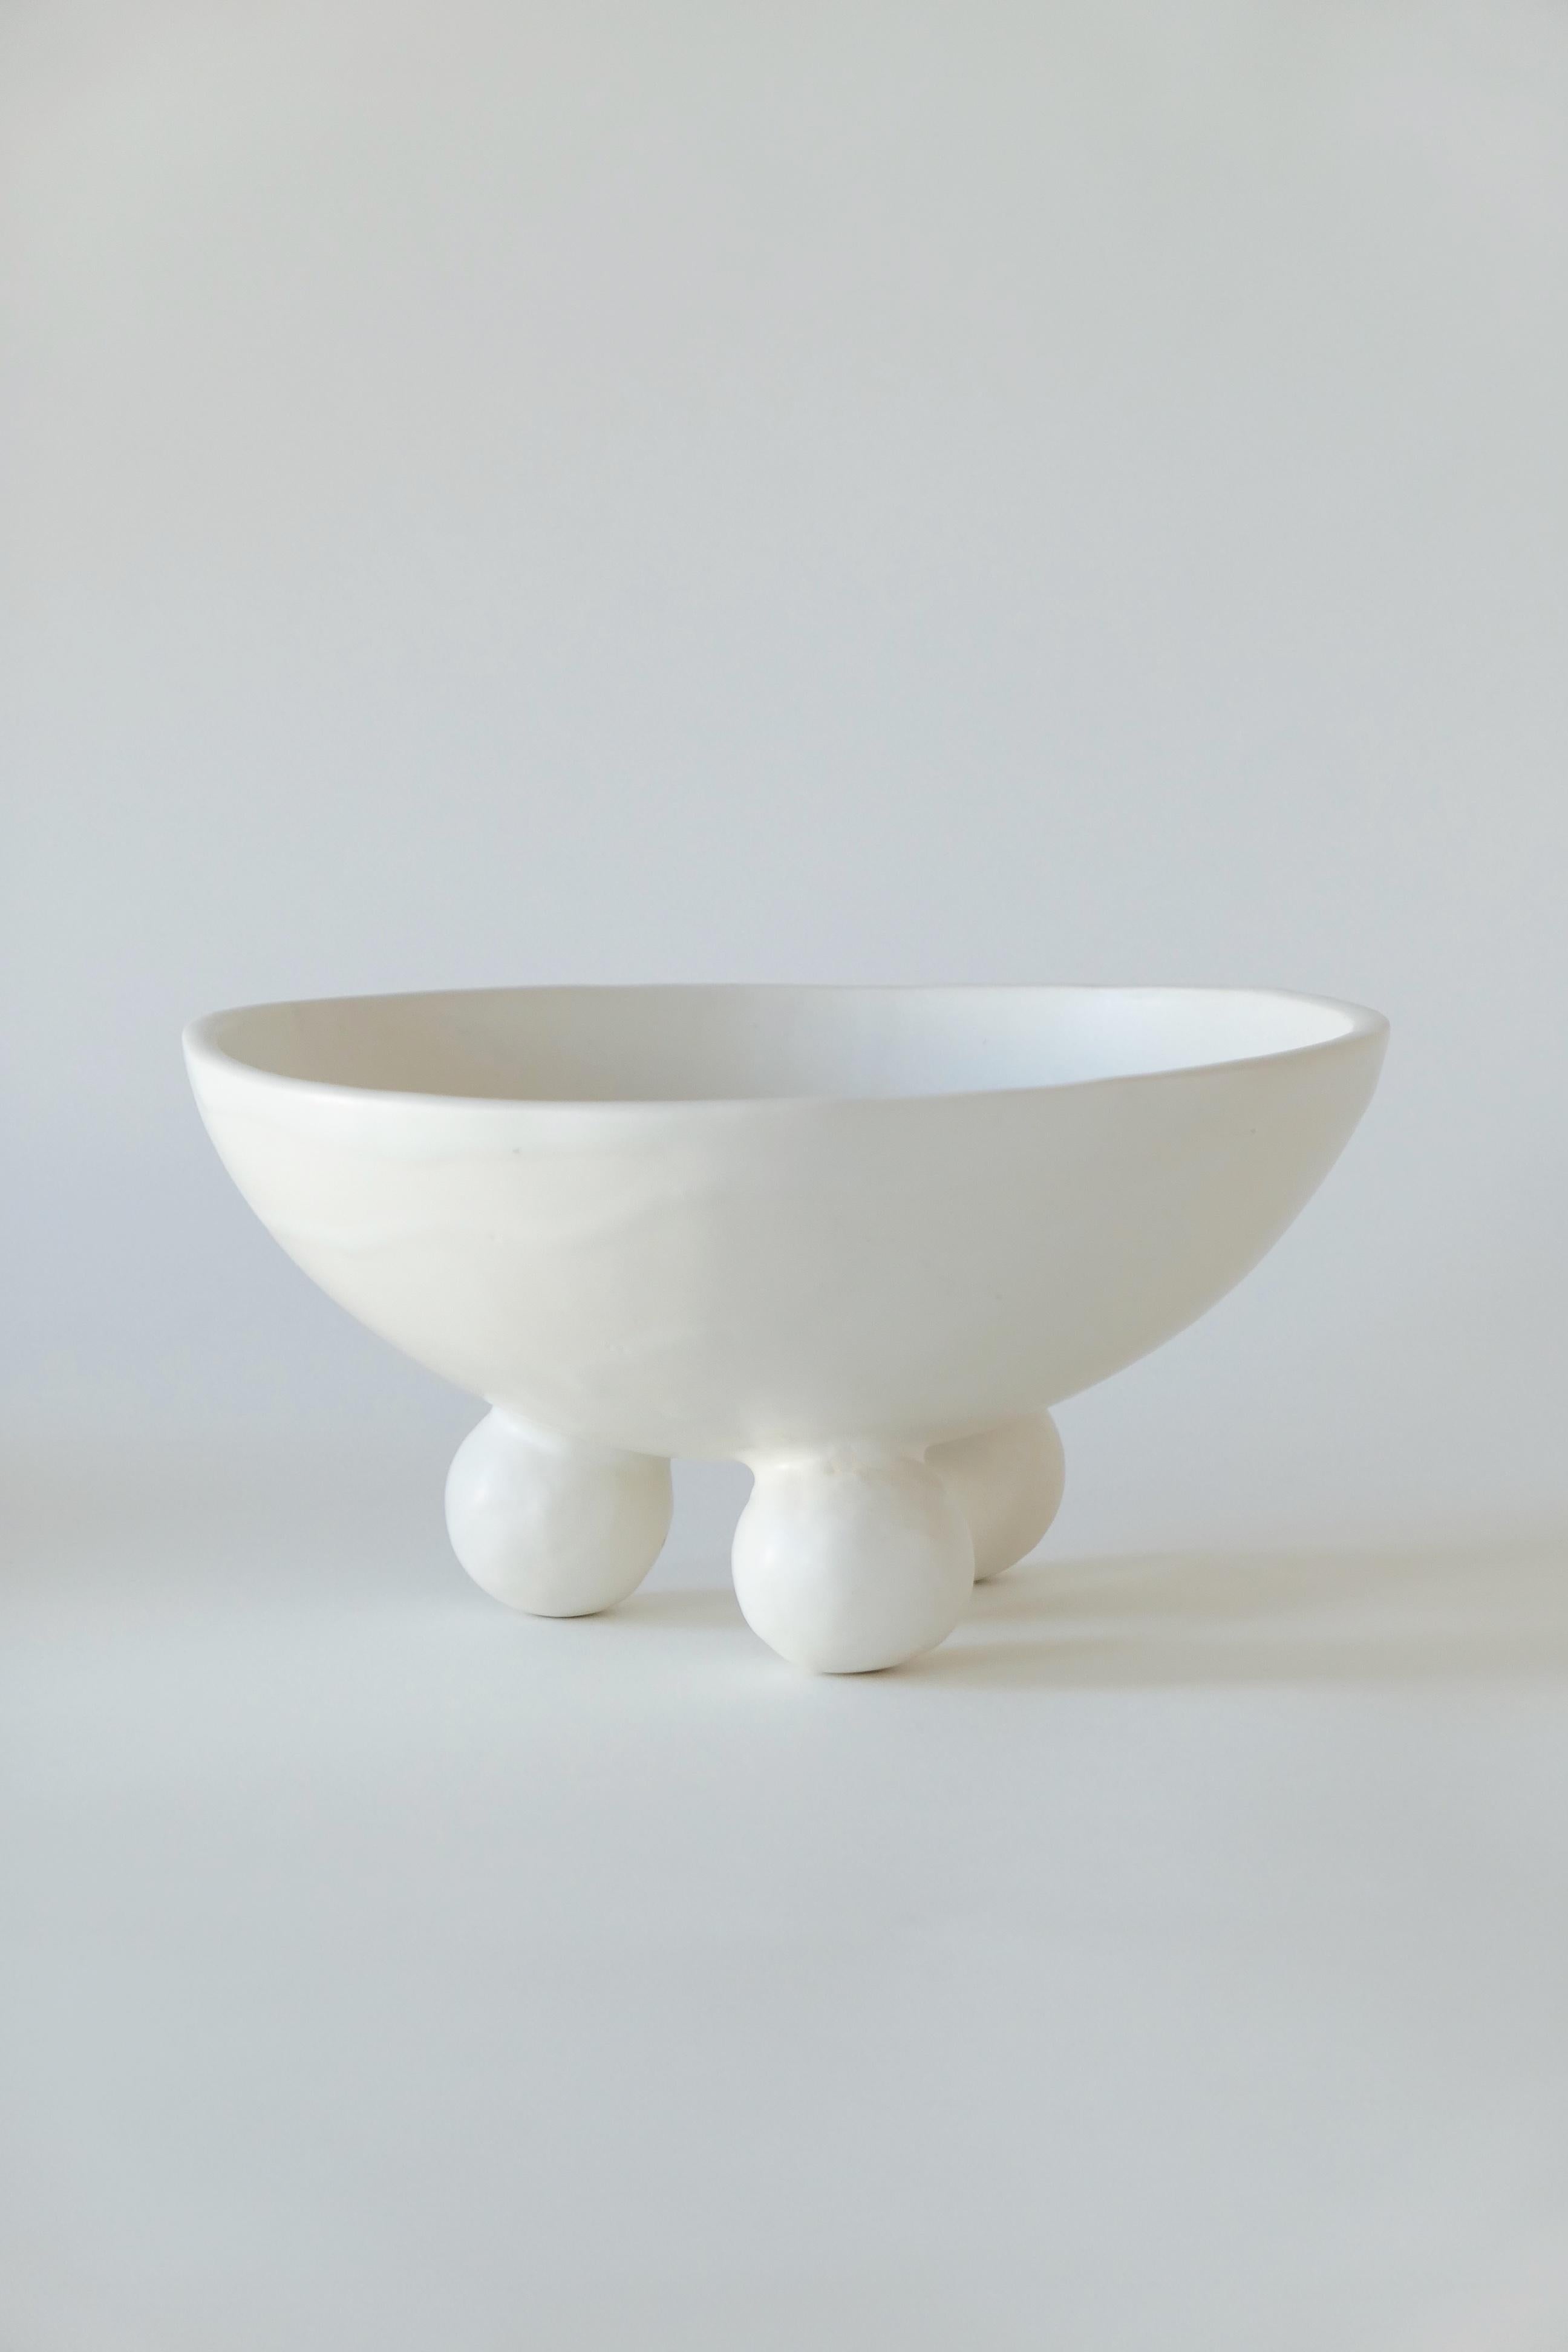 Moderne Schale aus Steingut mit Fuß. Abgeschlossen mit einer weichen, weißen Glasur.

Karina Vieira ist eine in Brooklyn ansässige Keramikerin, die sich auf handgefertigte Gefäße konzentriert. 

Ihr Werk bezieht sich auf verschiedene Stile, berührt